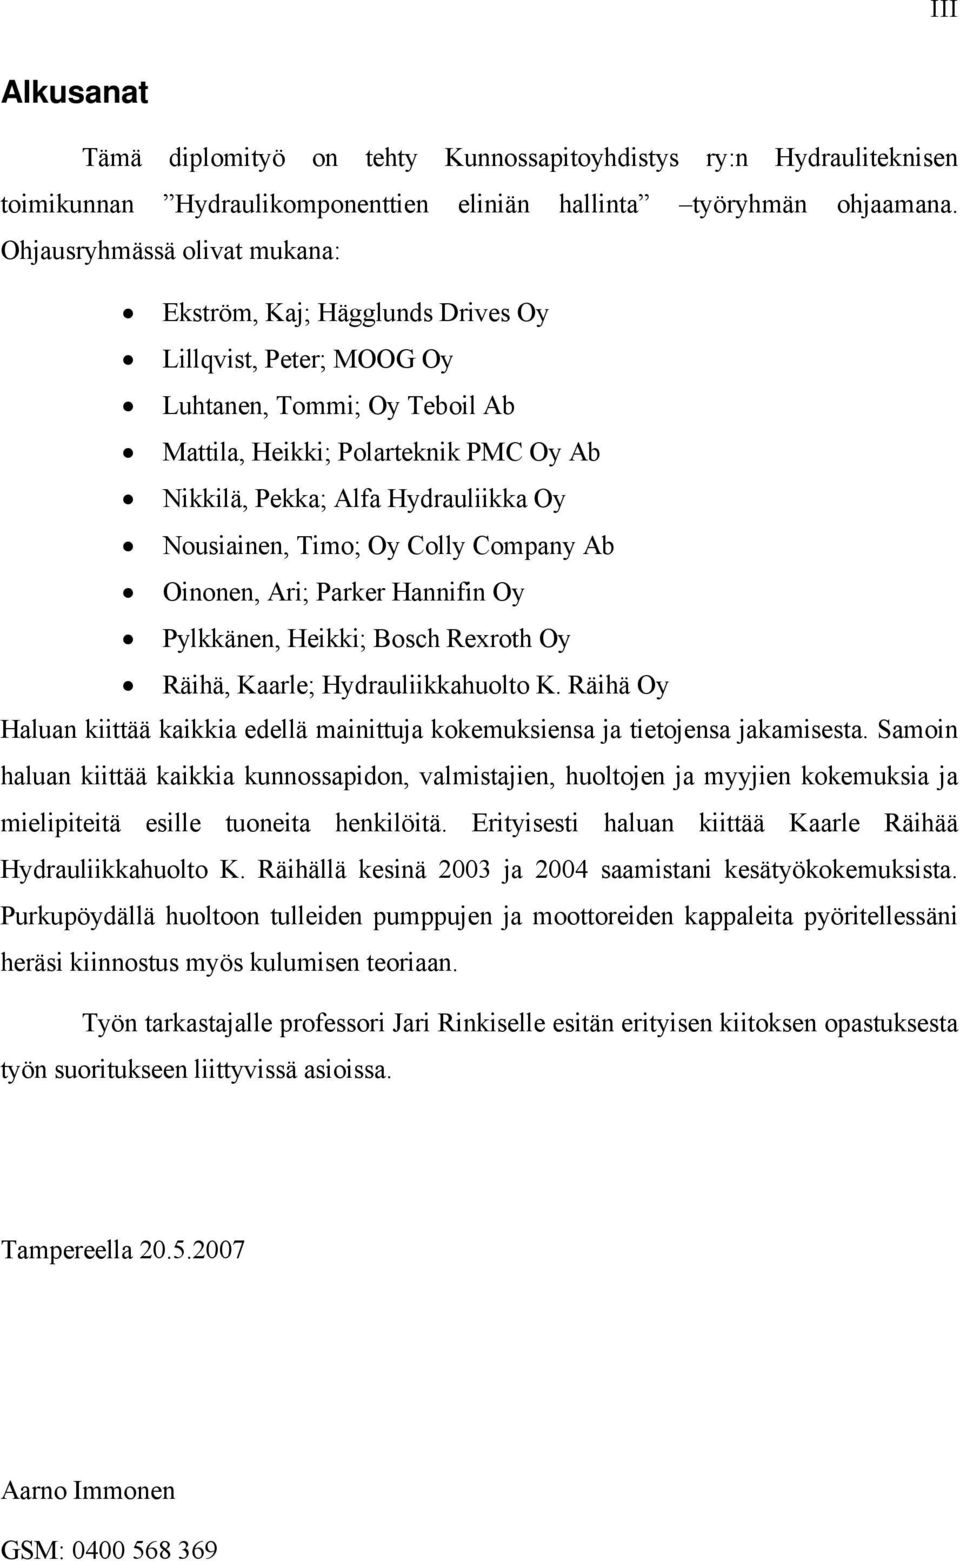 Nousiainen, Timo; Oy Colly Company Ab Oinonen, Ari; Parker Hannifin Oy Pylkkänen, Heikki; Bosch Rexroth Oy Räihä, Kaarle; Hydrauliikkahuolto K.